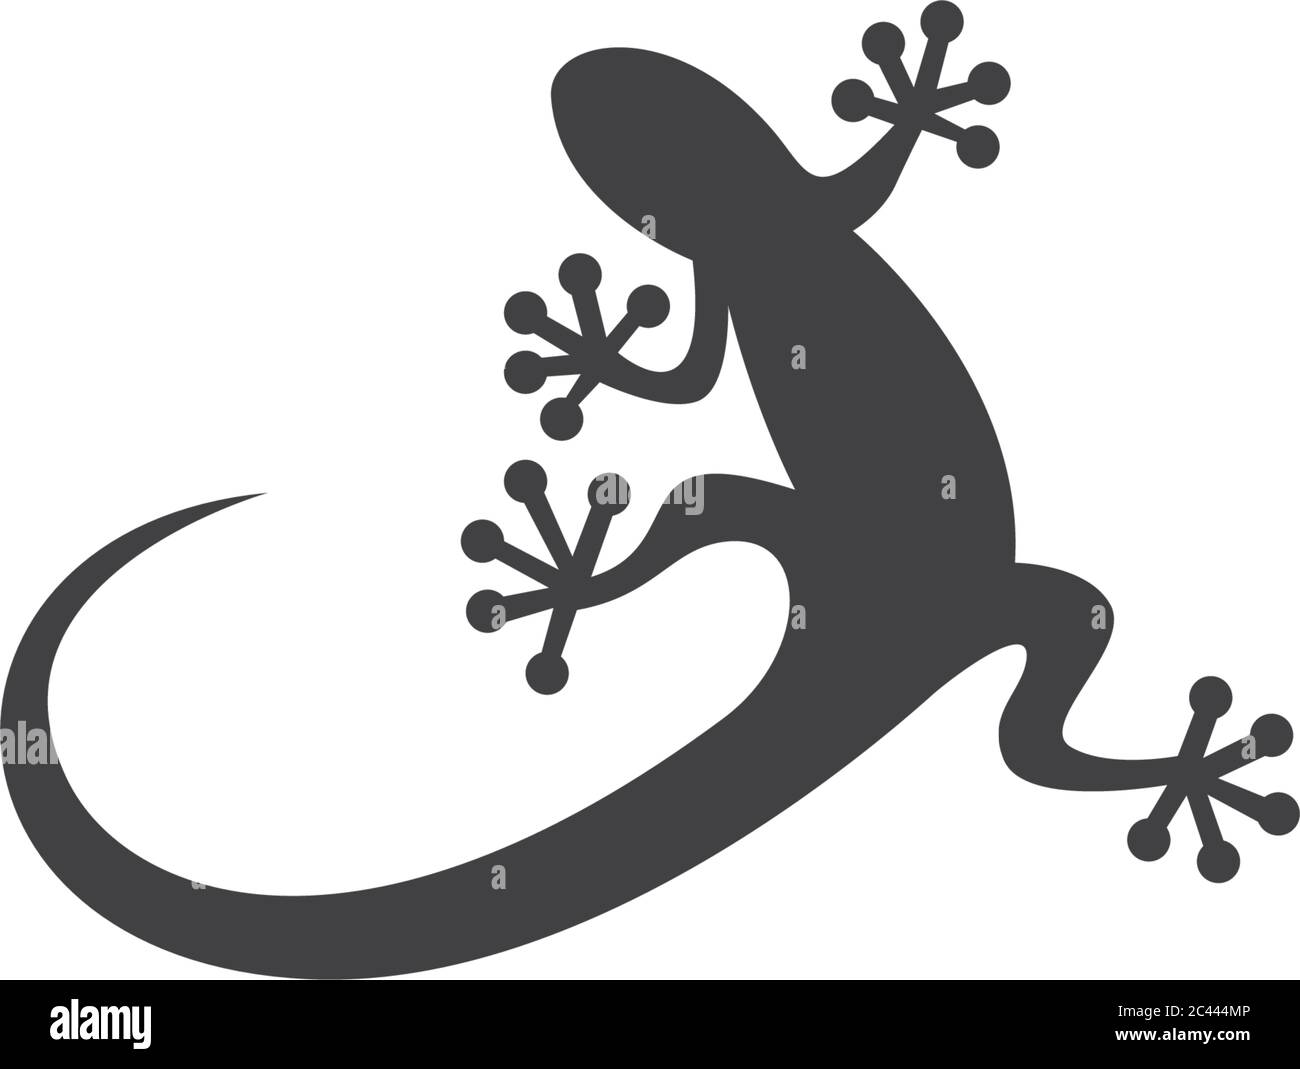 Lizard logo template vector  icon illustration design Stock Vector